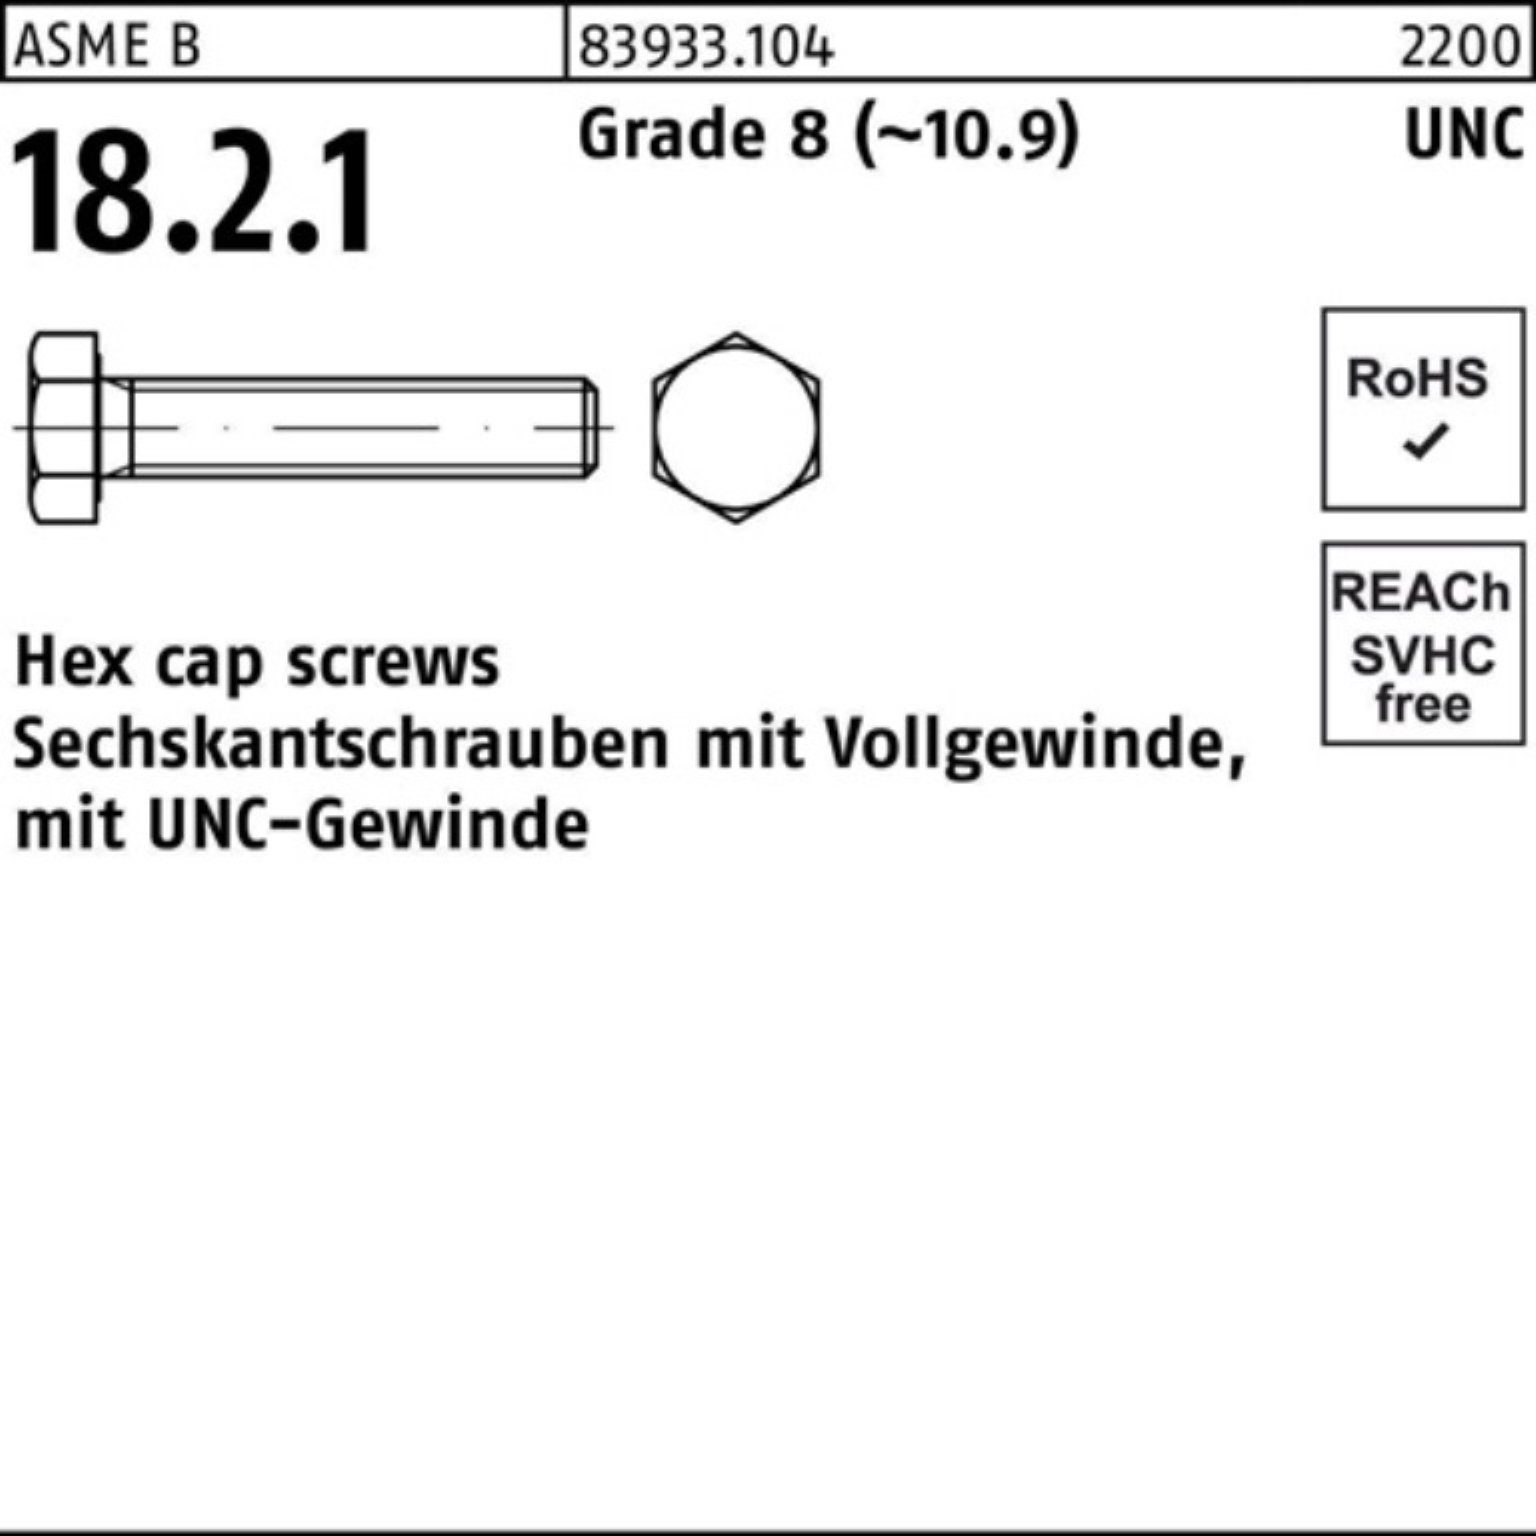 Reyher Sechskantschraube 100er Pack Sechskantschraube R 83933 UNC-Gewinde VG 3/8x 1/2 Grade 8